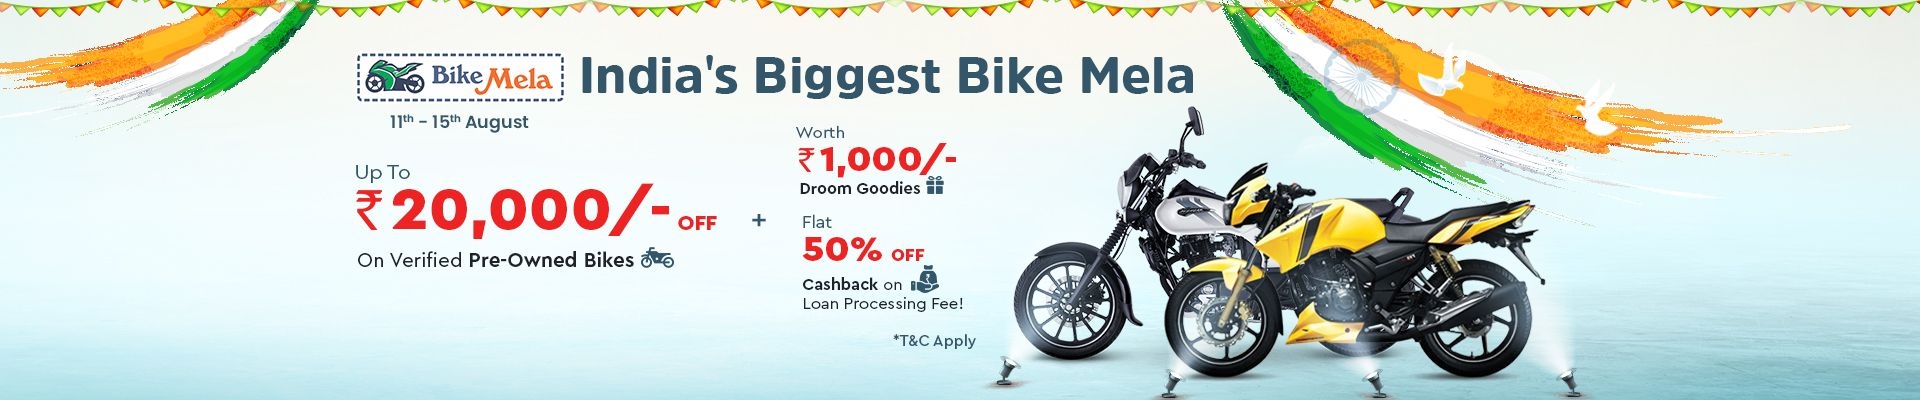 India's Biggest Bike Mela | Droom